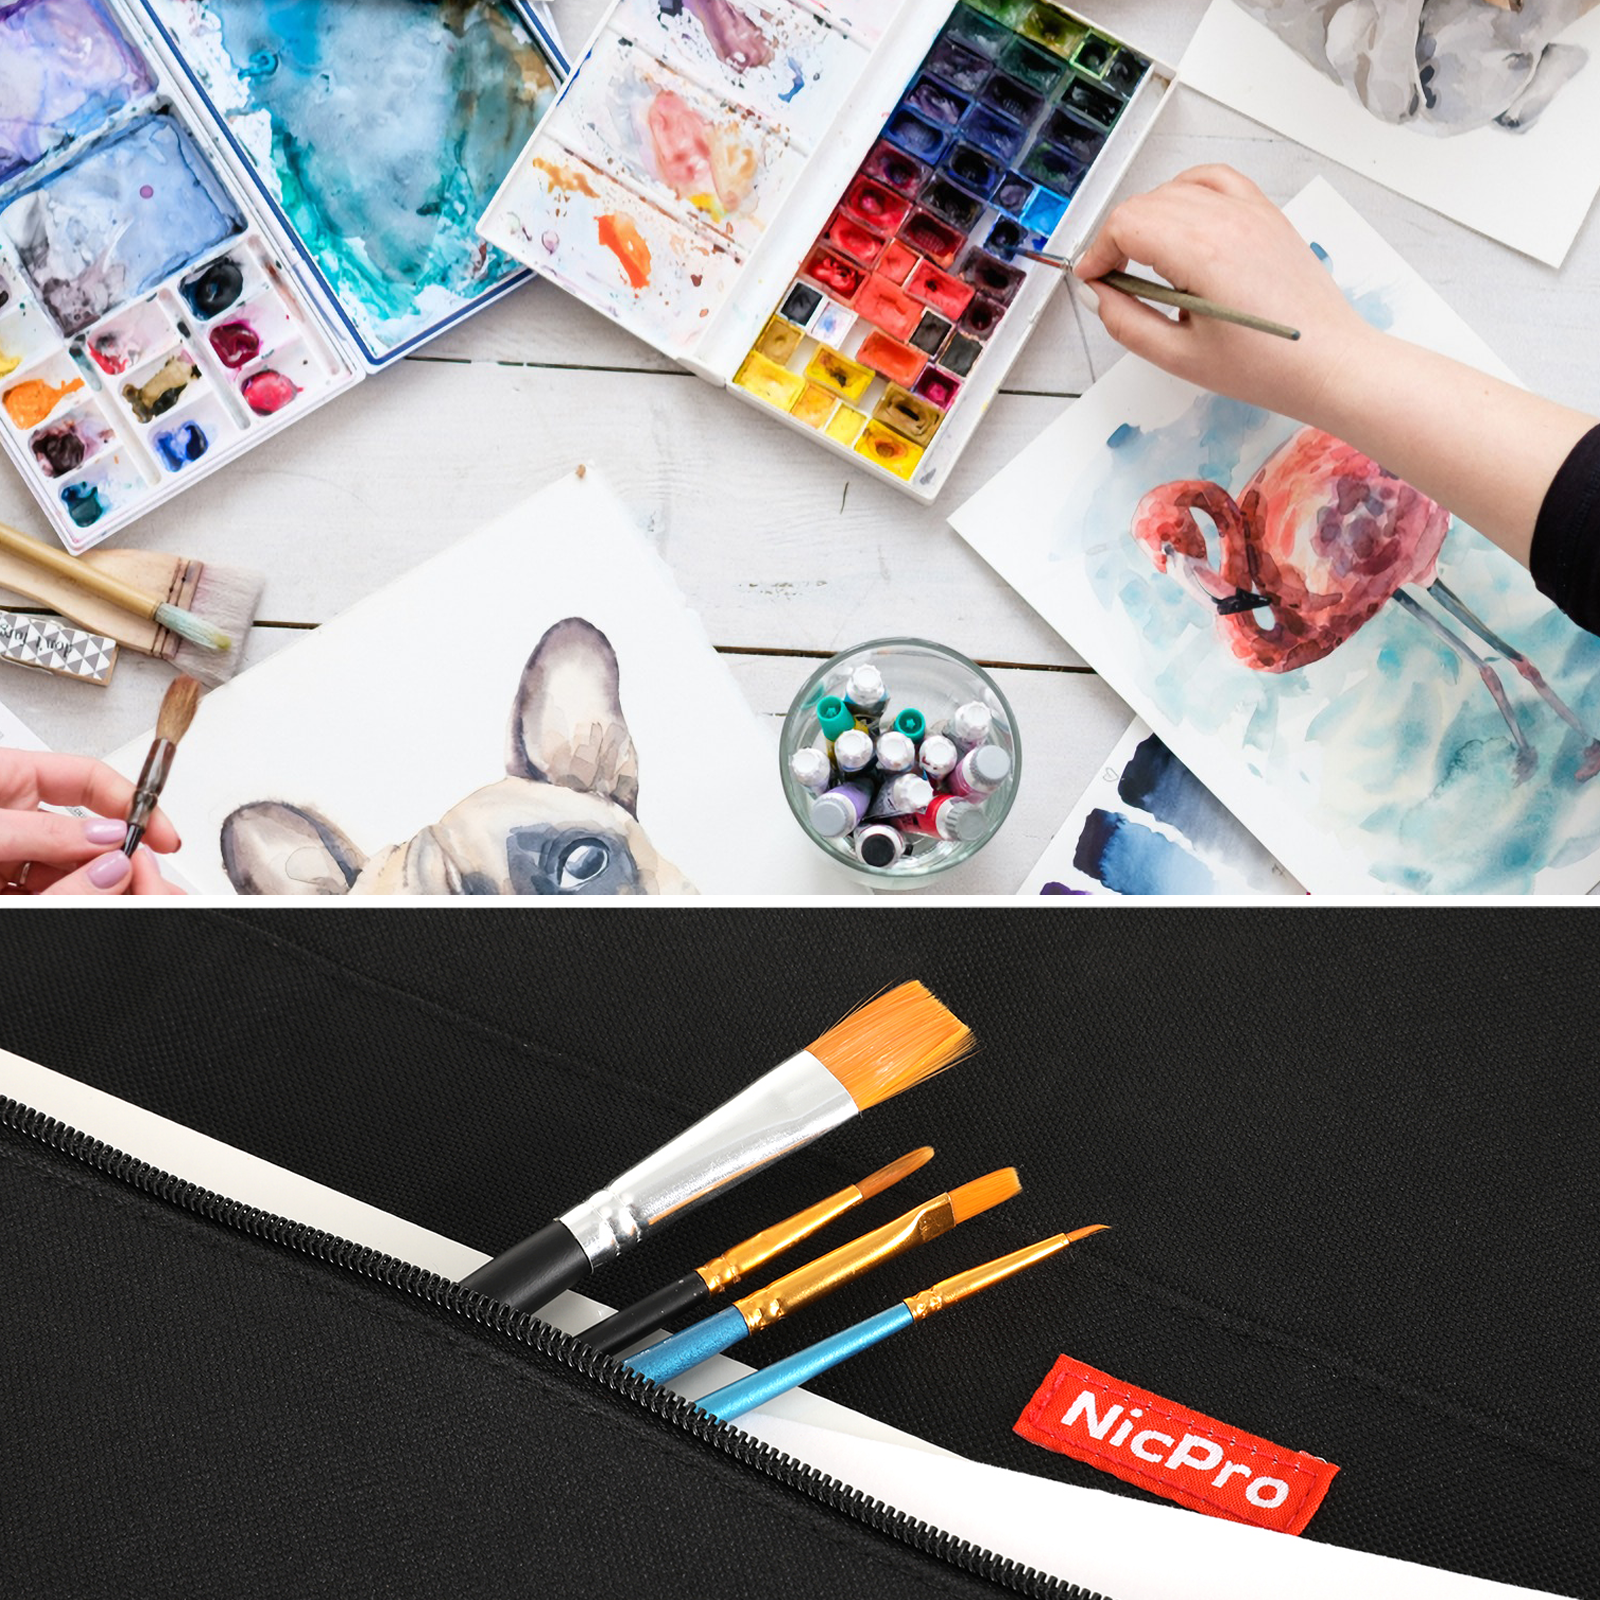 Nicpro Light Weight Art Portfolio Bag, 23 x 31 Inches Waterproof Nylon